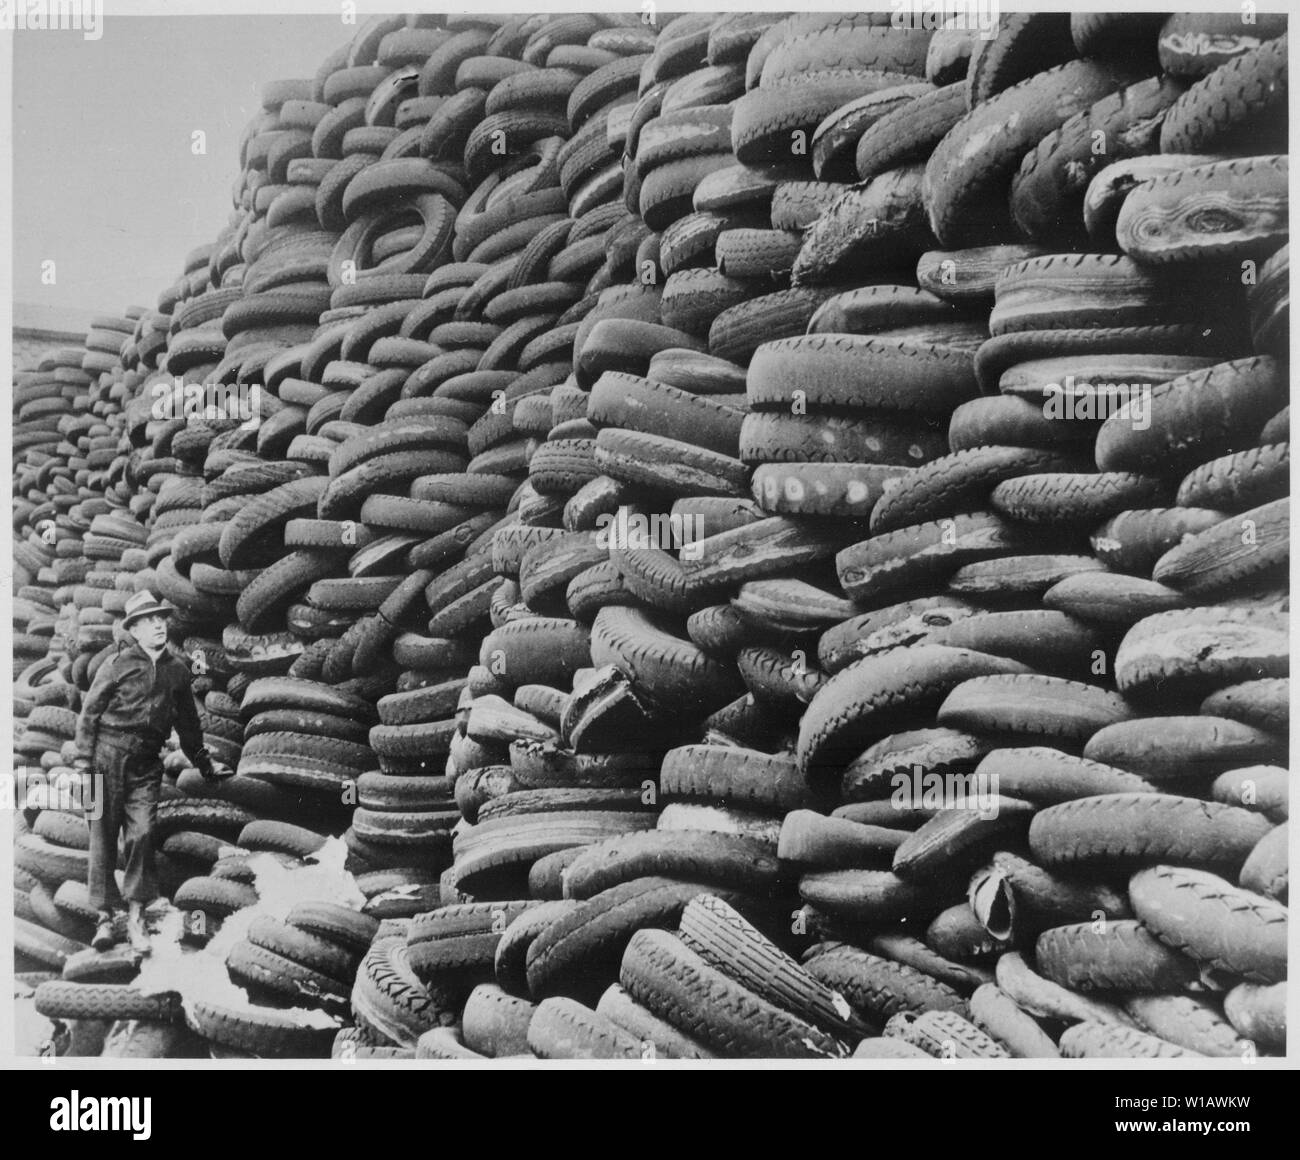 Als dieser Haufen verwendete Auto Reifen gibt, die Vereinigten Staaten mit  ihren vielen Pkw hat in weggeworfenen Reifen eine große Quelle der  Regenerate für den Einsatz im Krieg., 1939 - 1945; Allgemeine